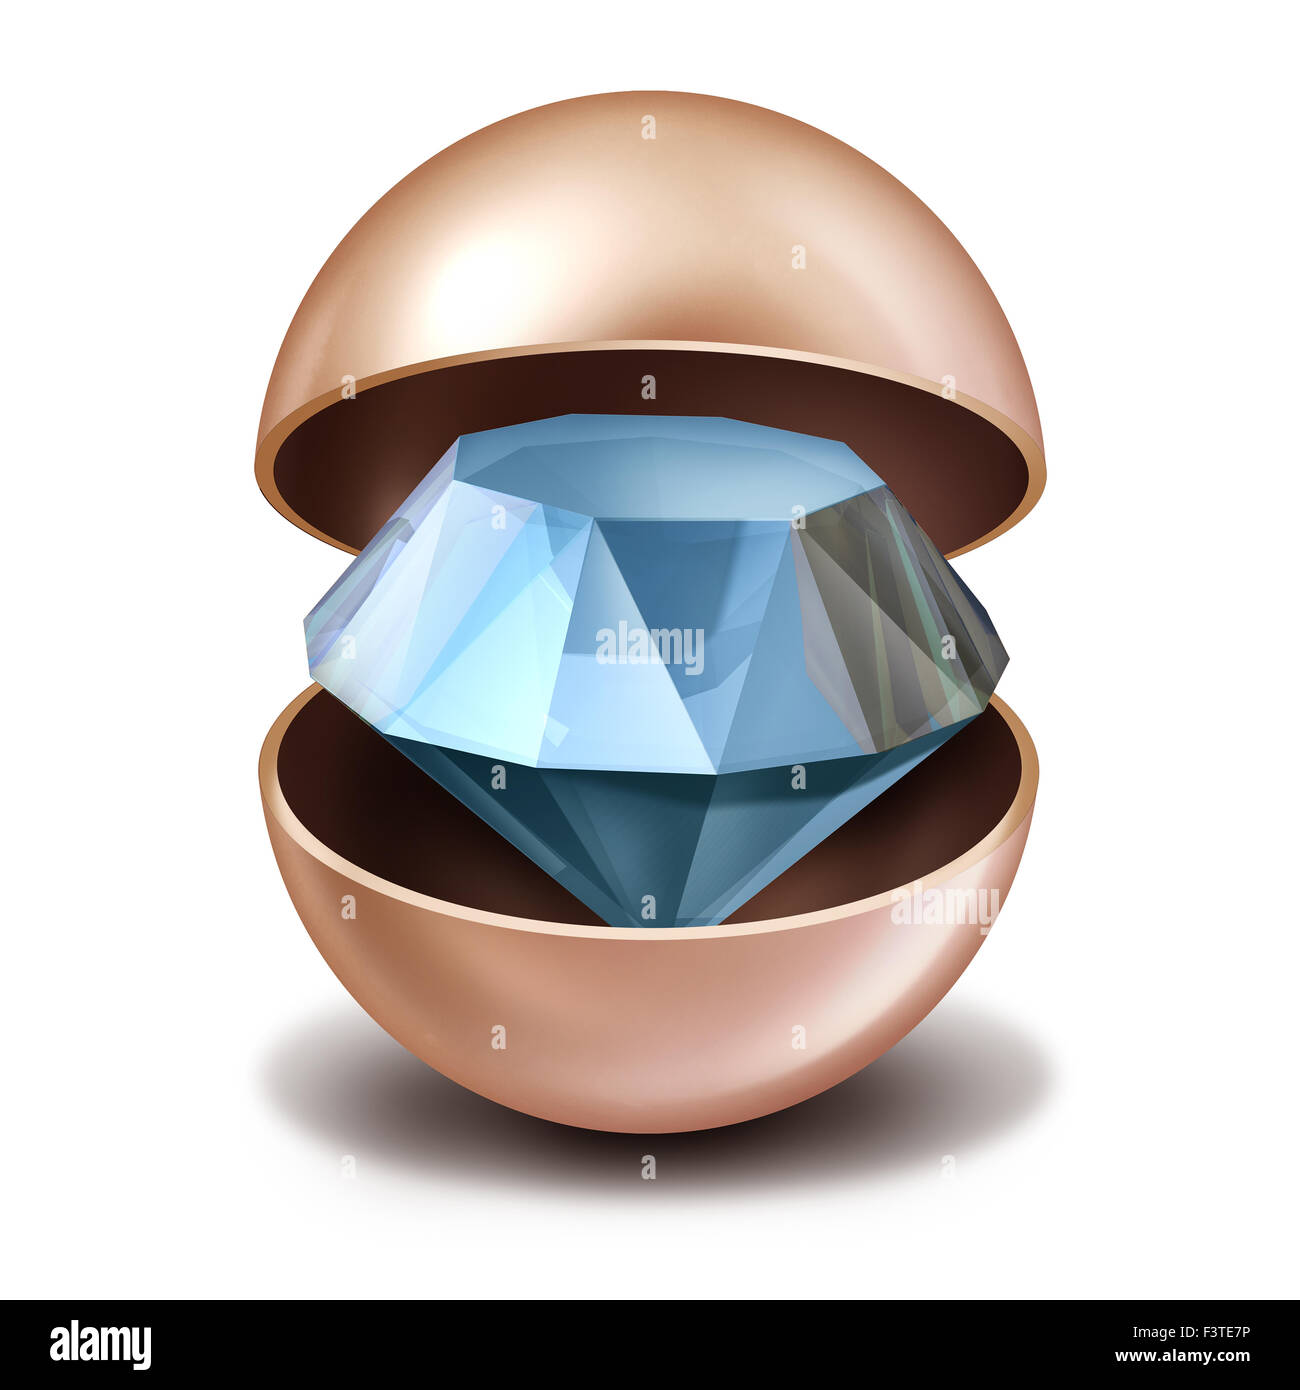 Investieren Geheimnisse Konzept als eine offene kostbare Perle mit einem funkelnden Diamanten im Inneren als Metapher und finanziellen Schutz Symbol für versteckte private Fonds investieren Unternehmen. Stockfoto